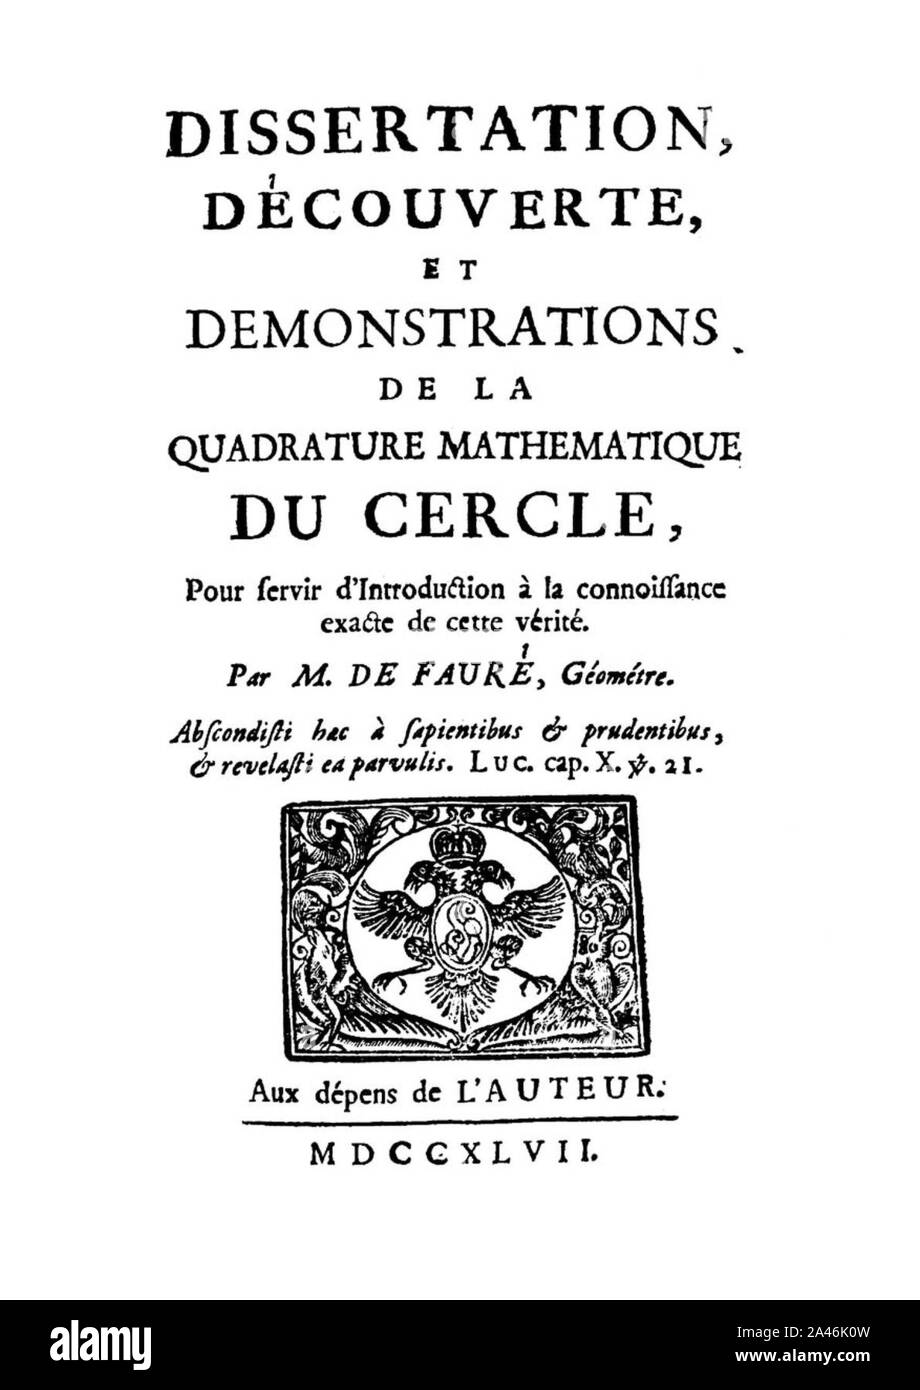 Faurè - Dissertation, découverte, et demonstrations de la quadrature mathematique du cercle, 1747 - 1515965. Stock Photo